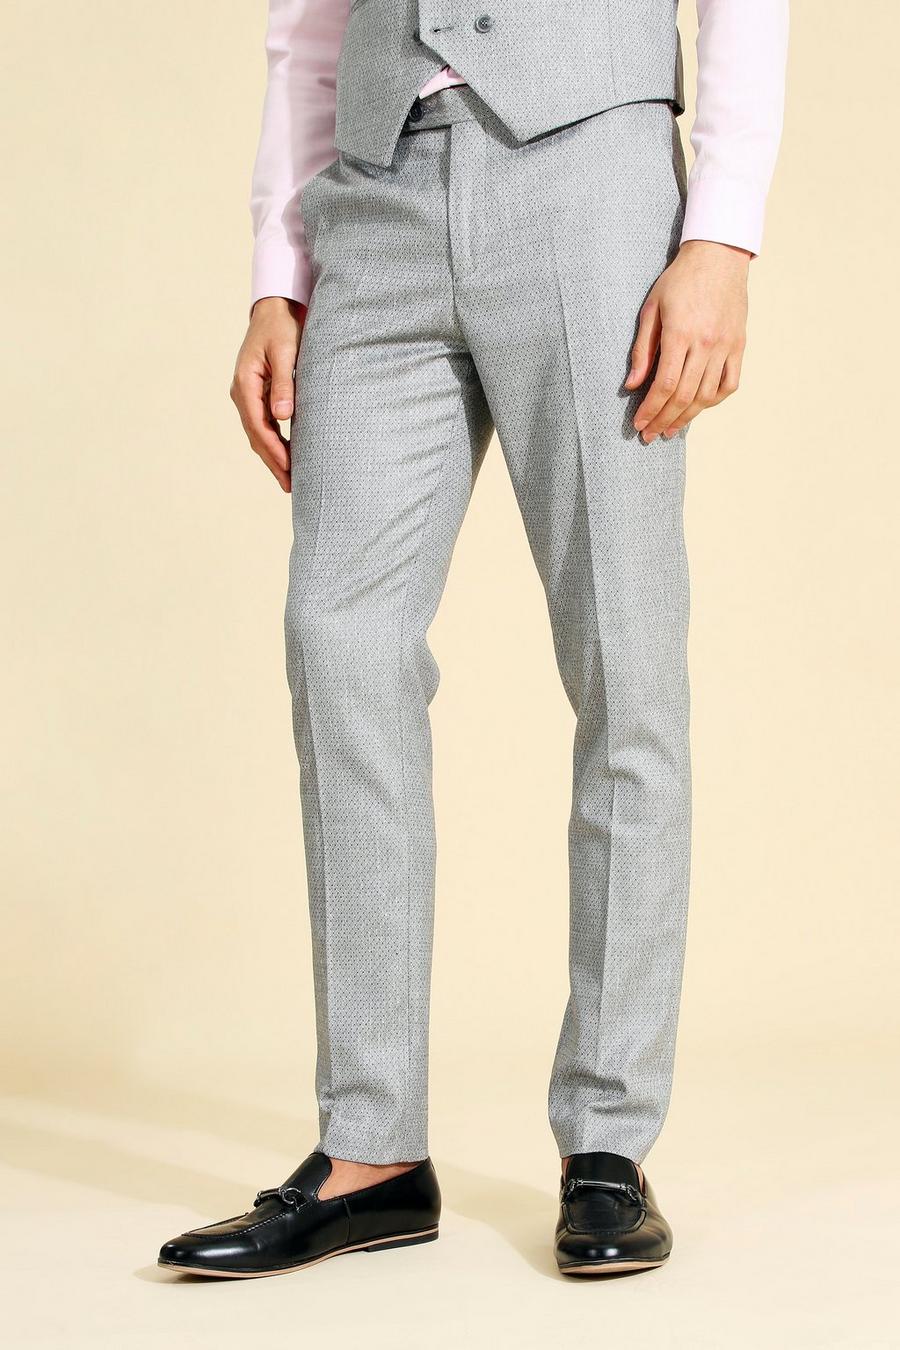 Skinny Grey Suit Pants